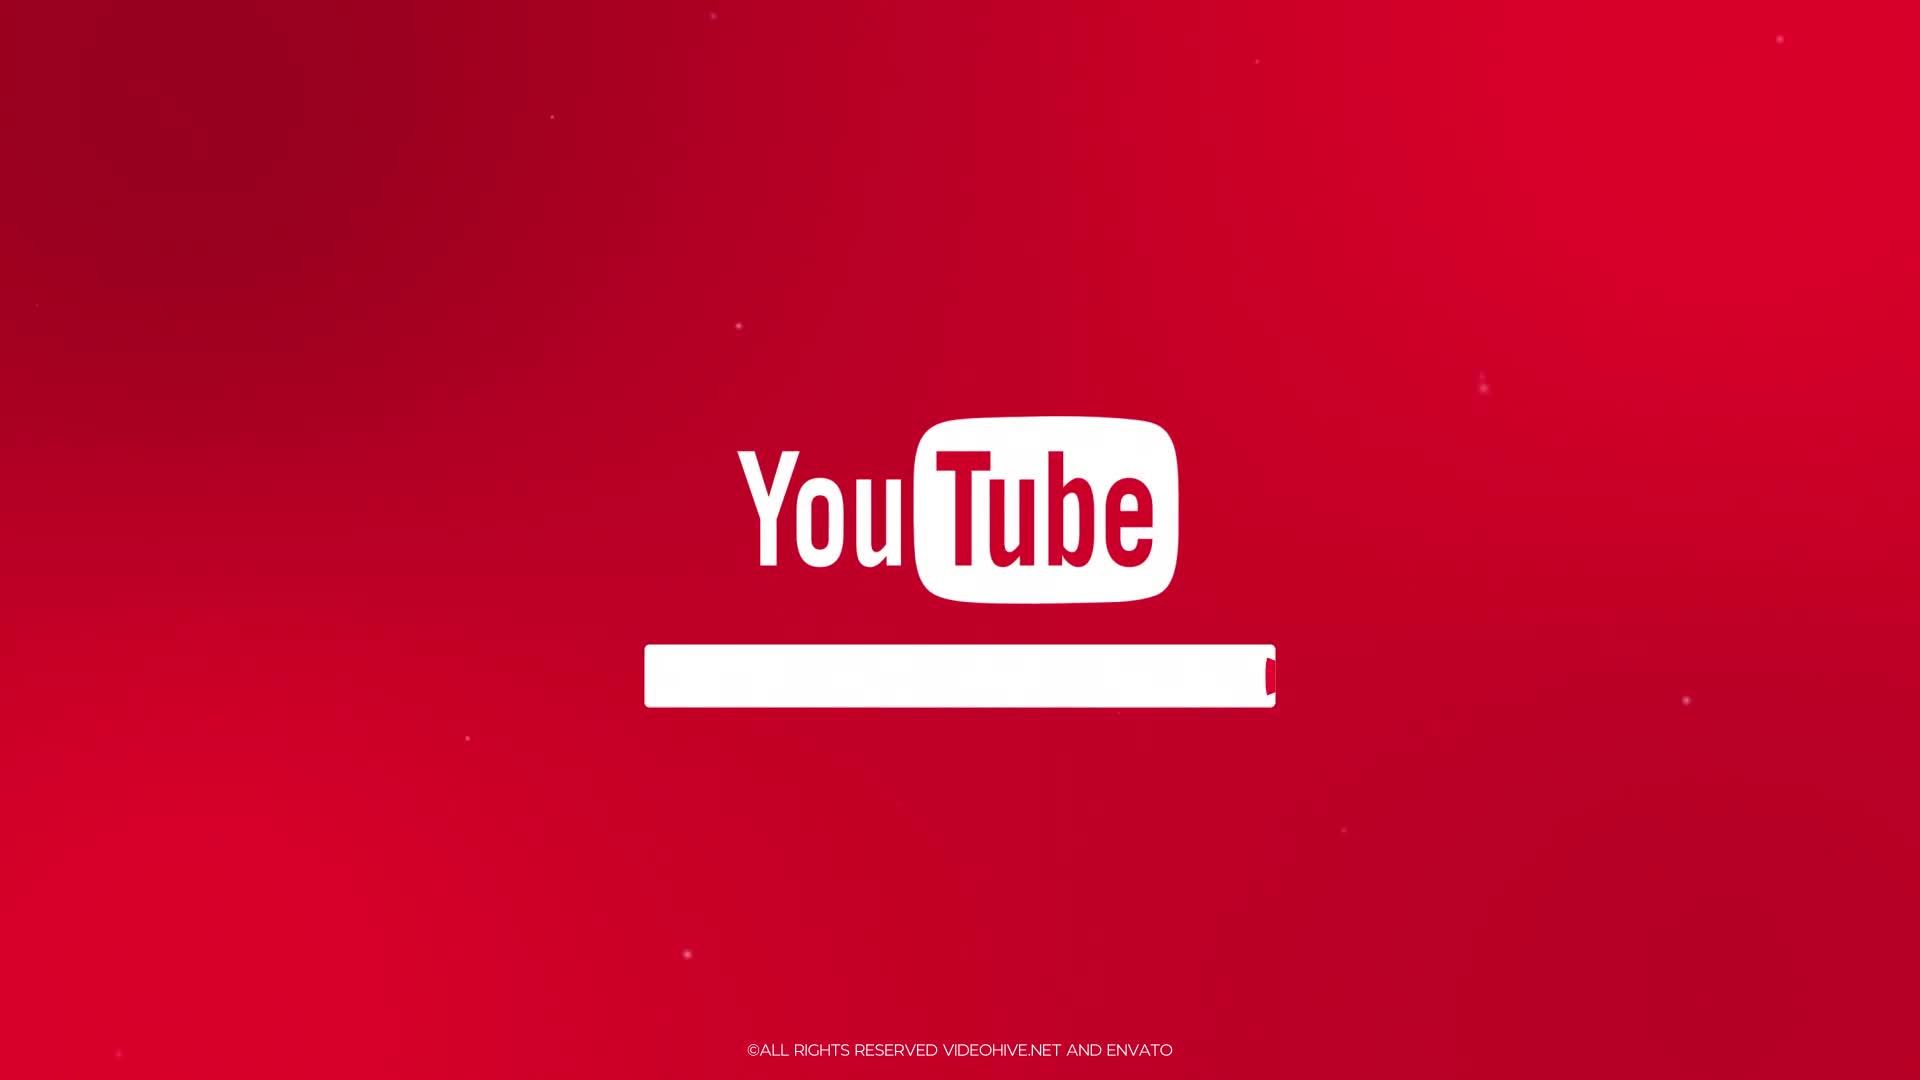 YouTube Promo for Premiere Pro Videohive 33299234 Premiere Pro Image 1